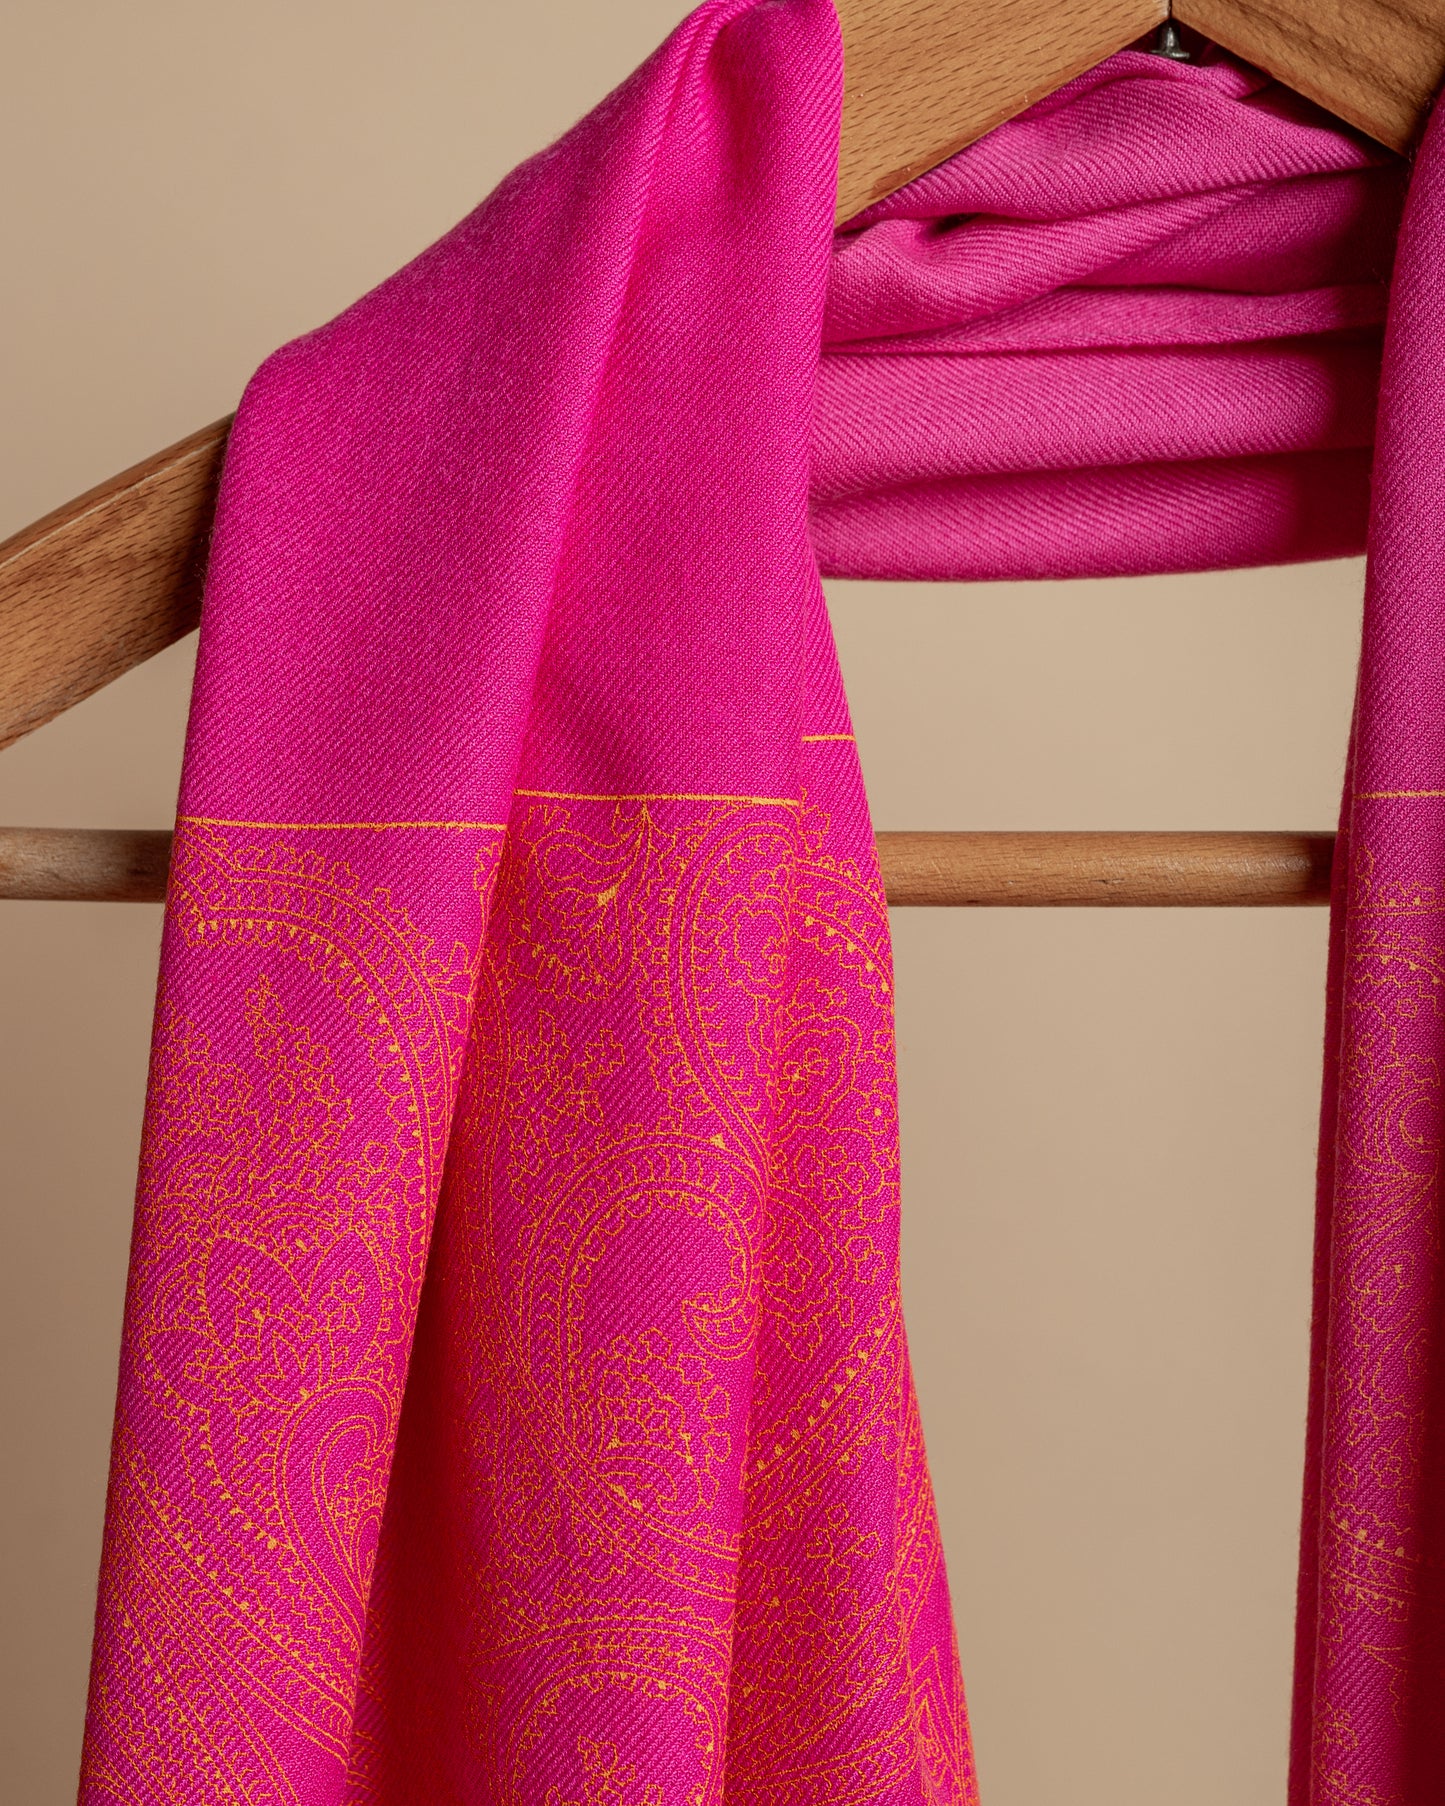 Sciarpa color rosa orchiedea stampata a mano con frange